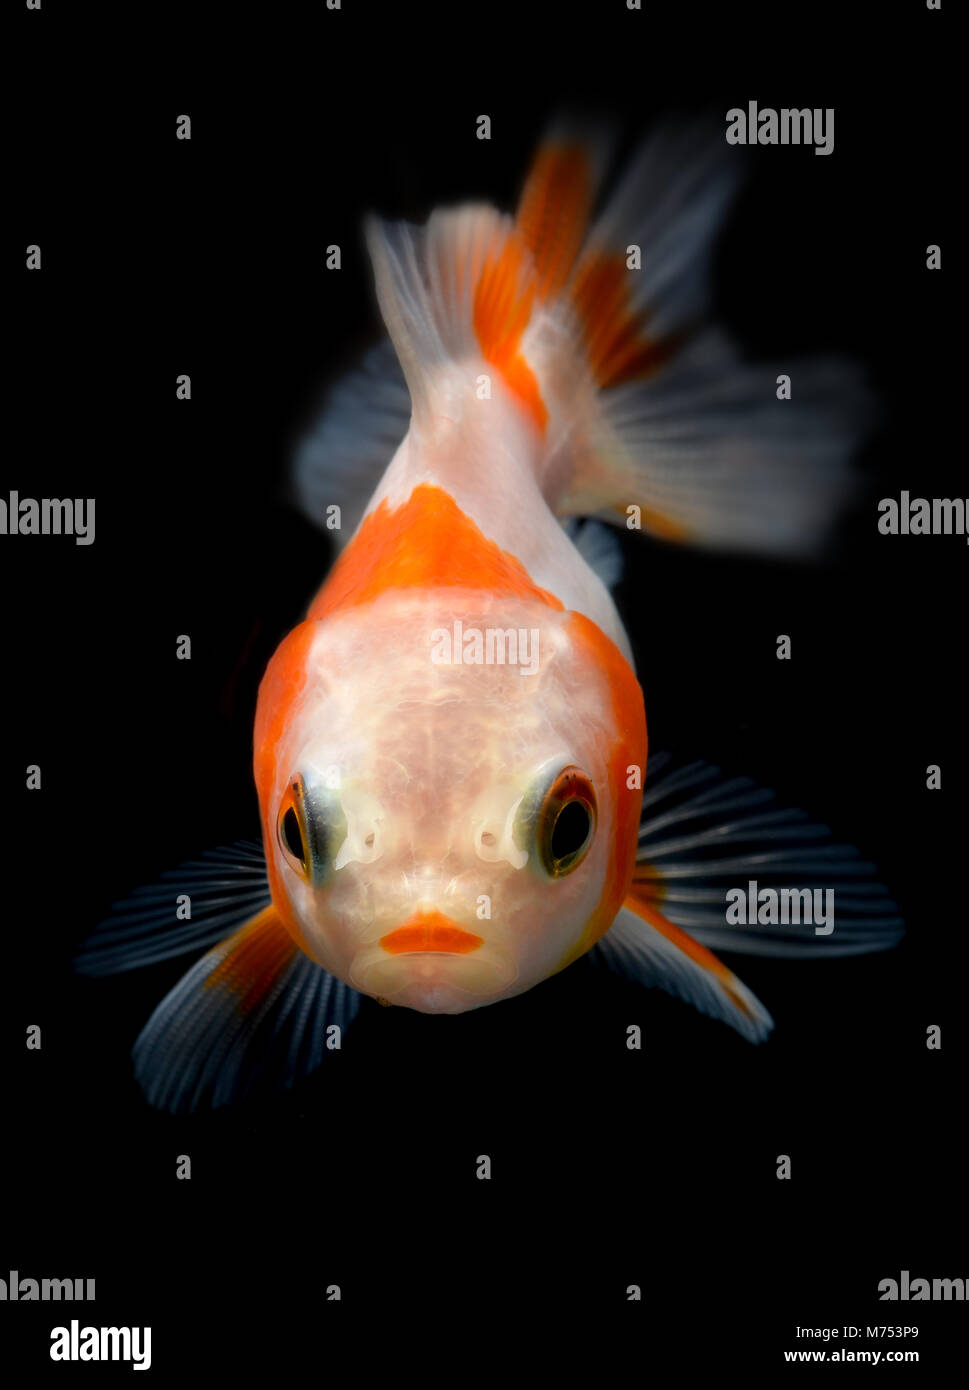 Pesce carino immagini e fotografie stock ad alta risoluzione - Alamy